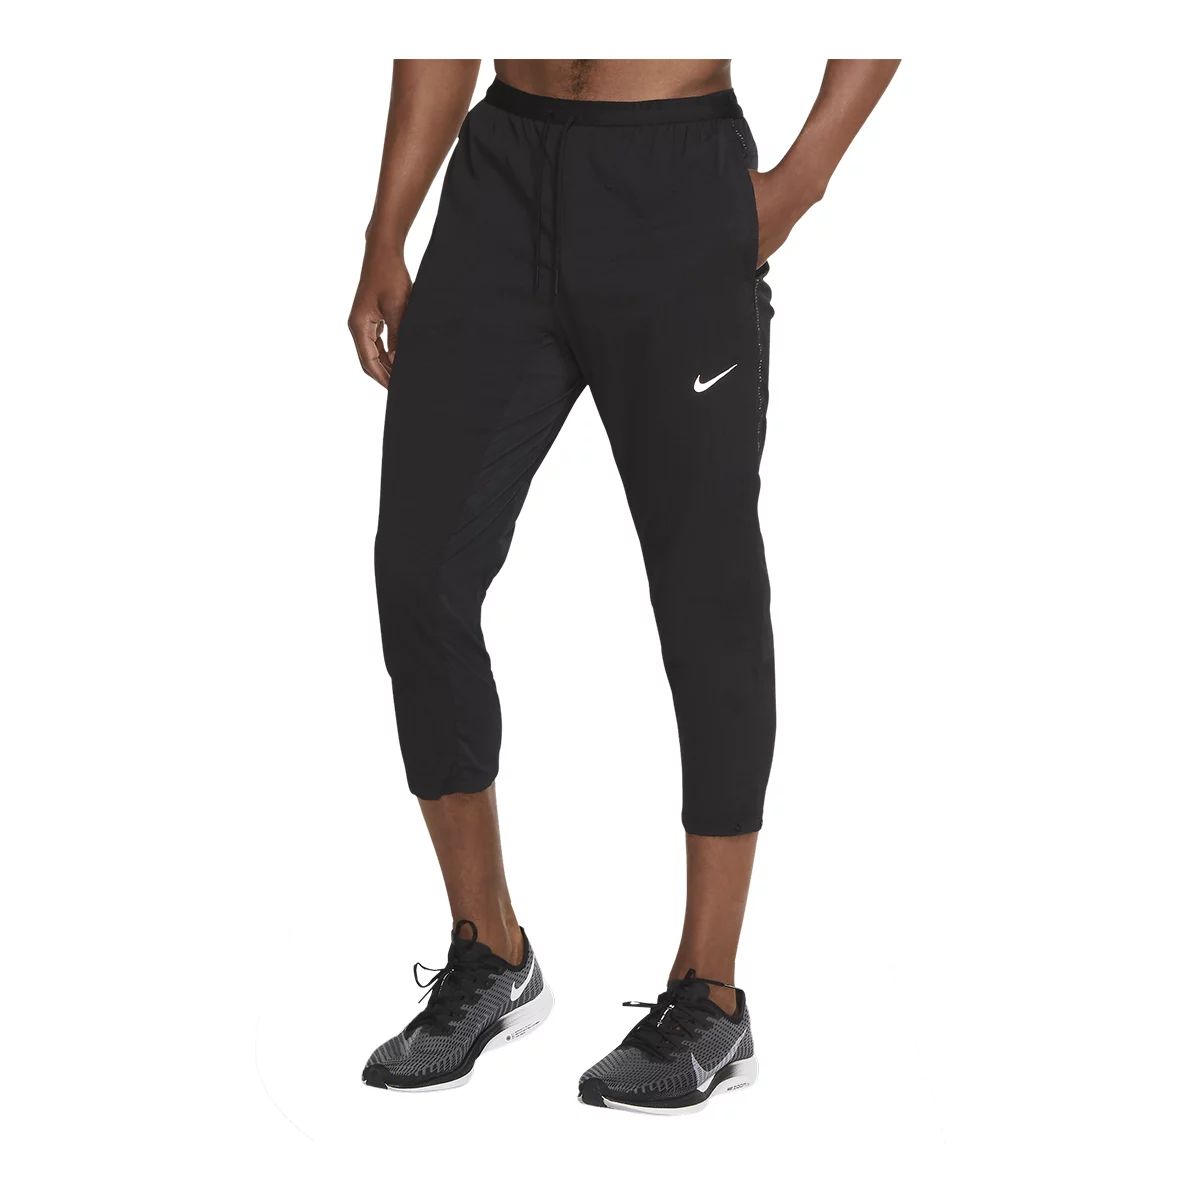 Phenom Elite Men's Running Tights BLACK/REFLECTIVE SILV - Nike